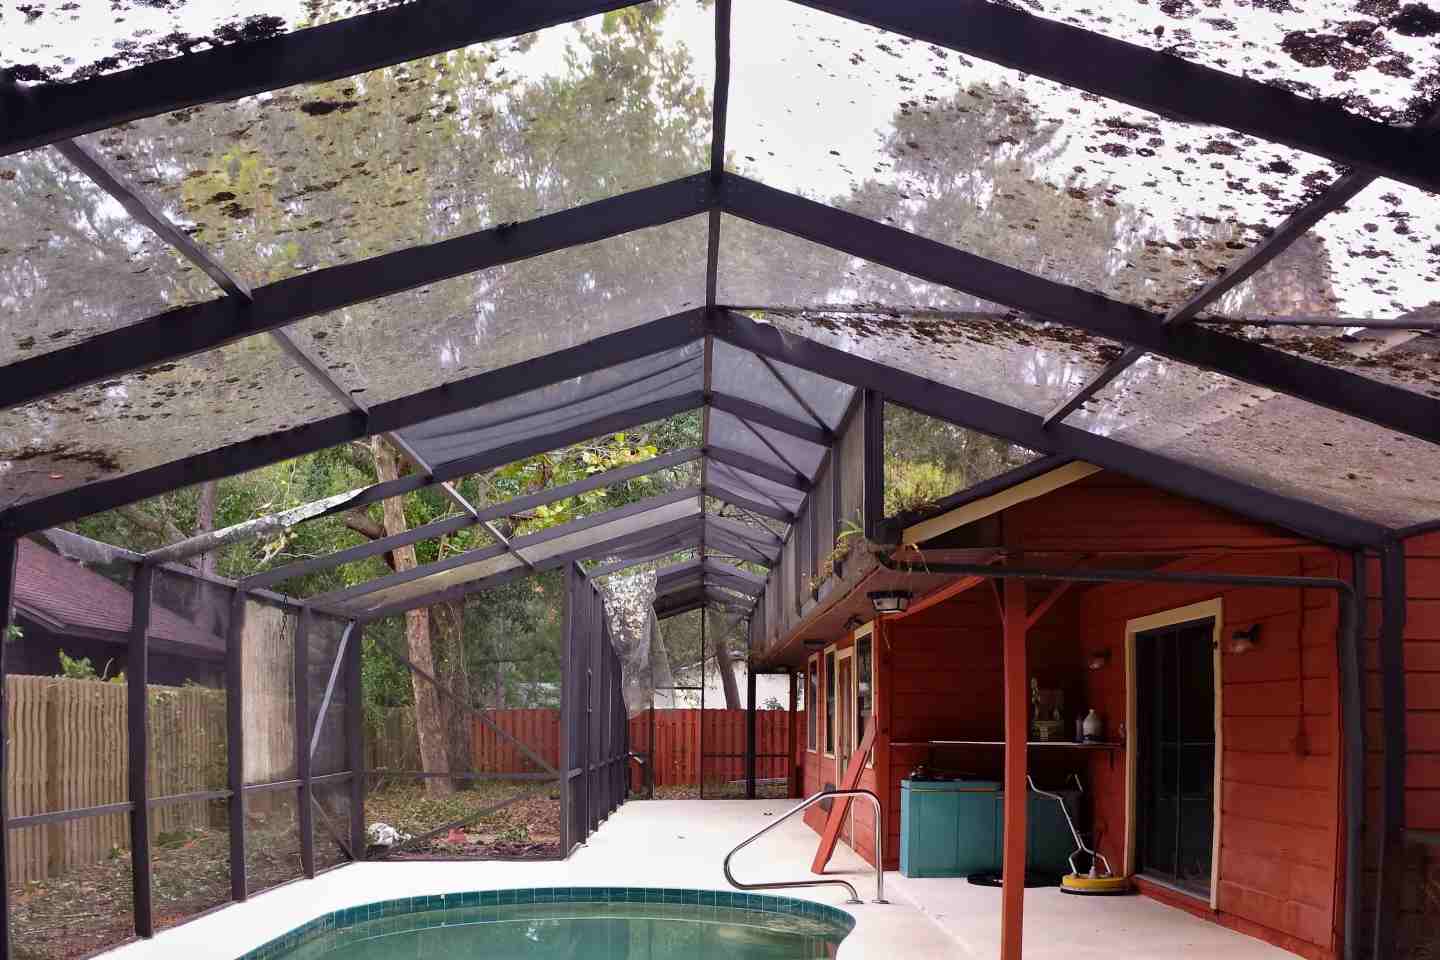 01-before-pool-enclosure-roof-re-screen.jpg